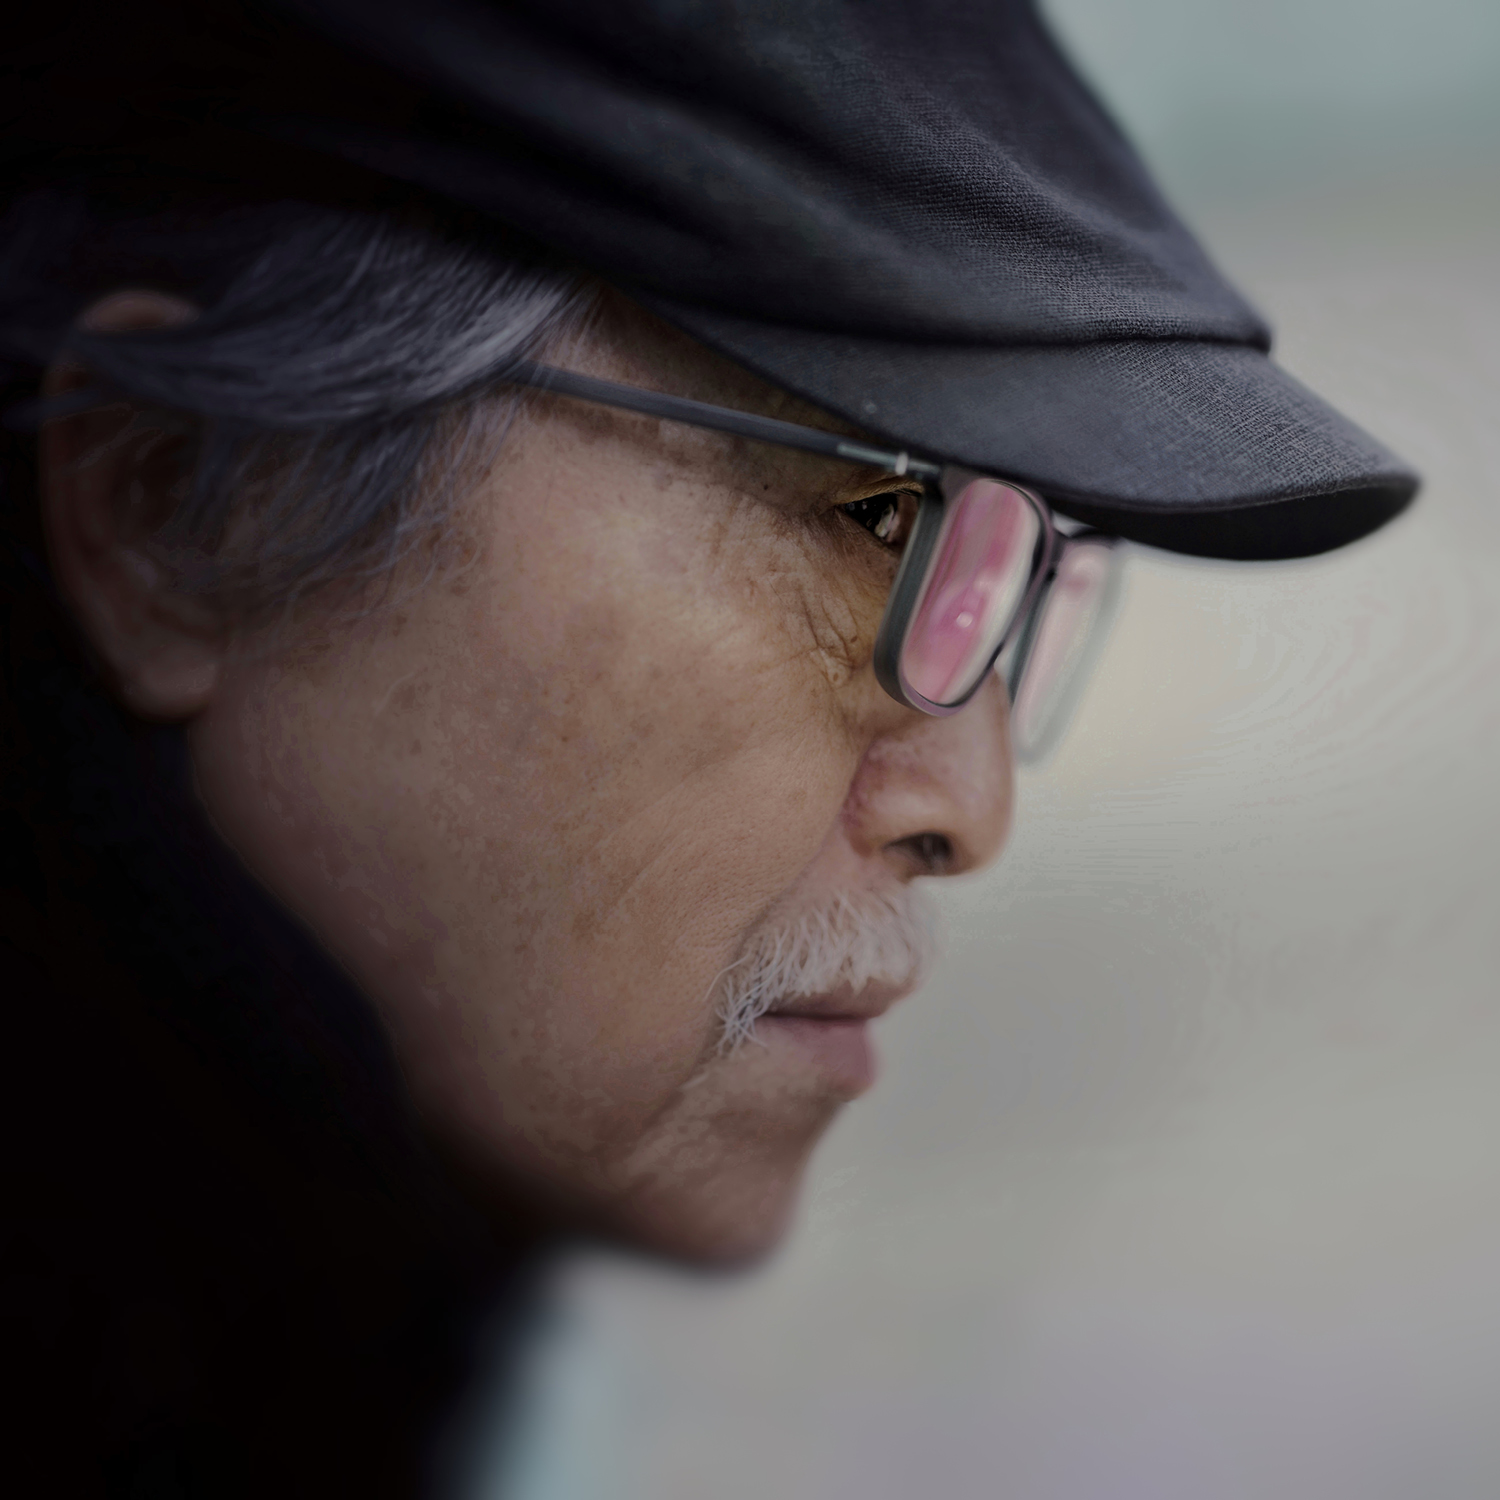 攝影家張照堂辭世 享壽81歲 曾獲金馬獎終身成就獎、國家文藝獎